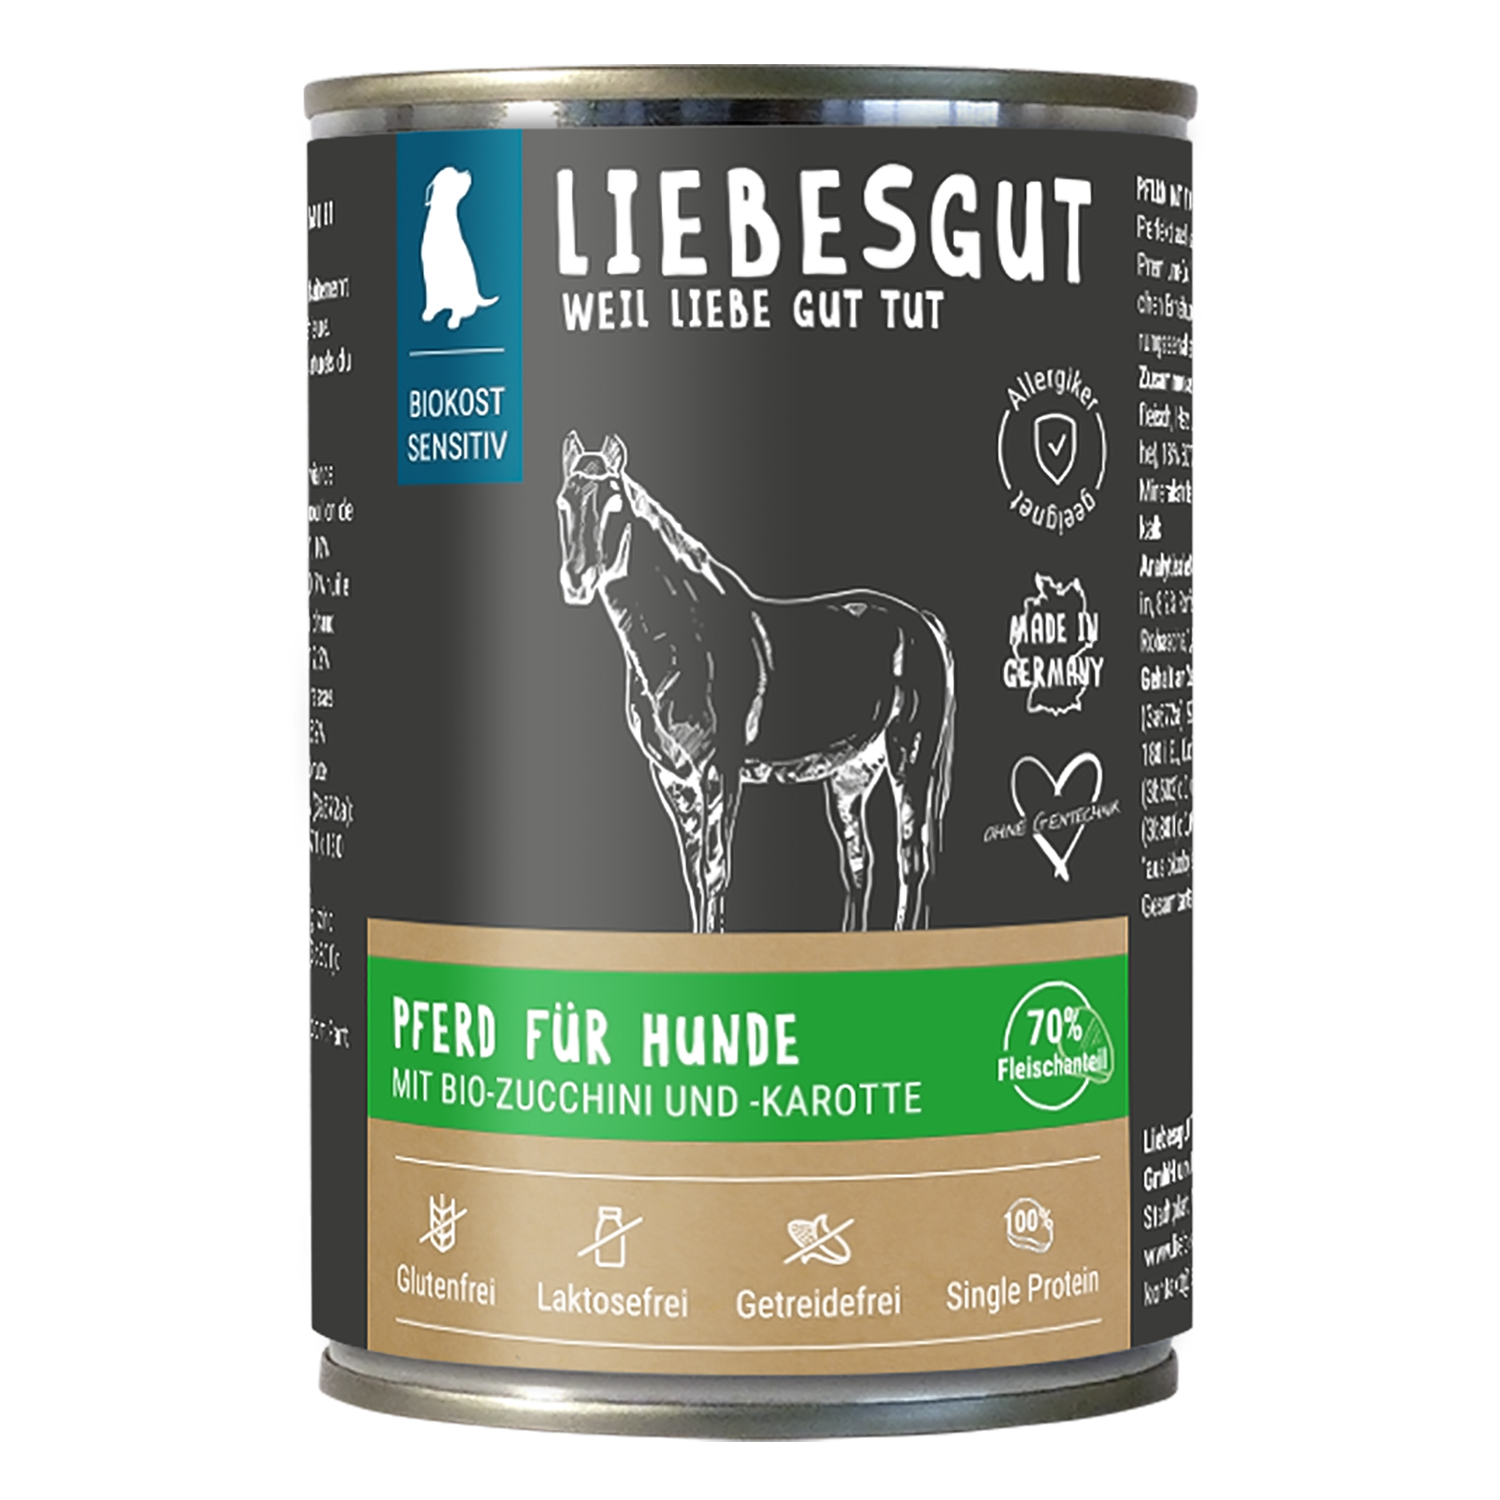 Pferd mit Bio-Zucchini und Bio-Karotte von Liebesgut – 400g